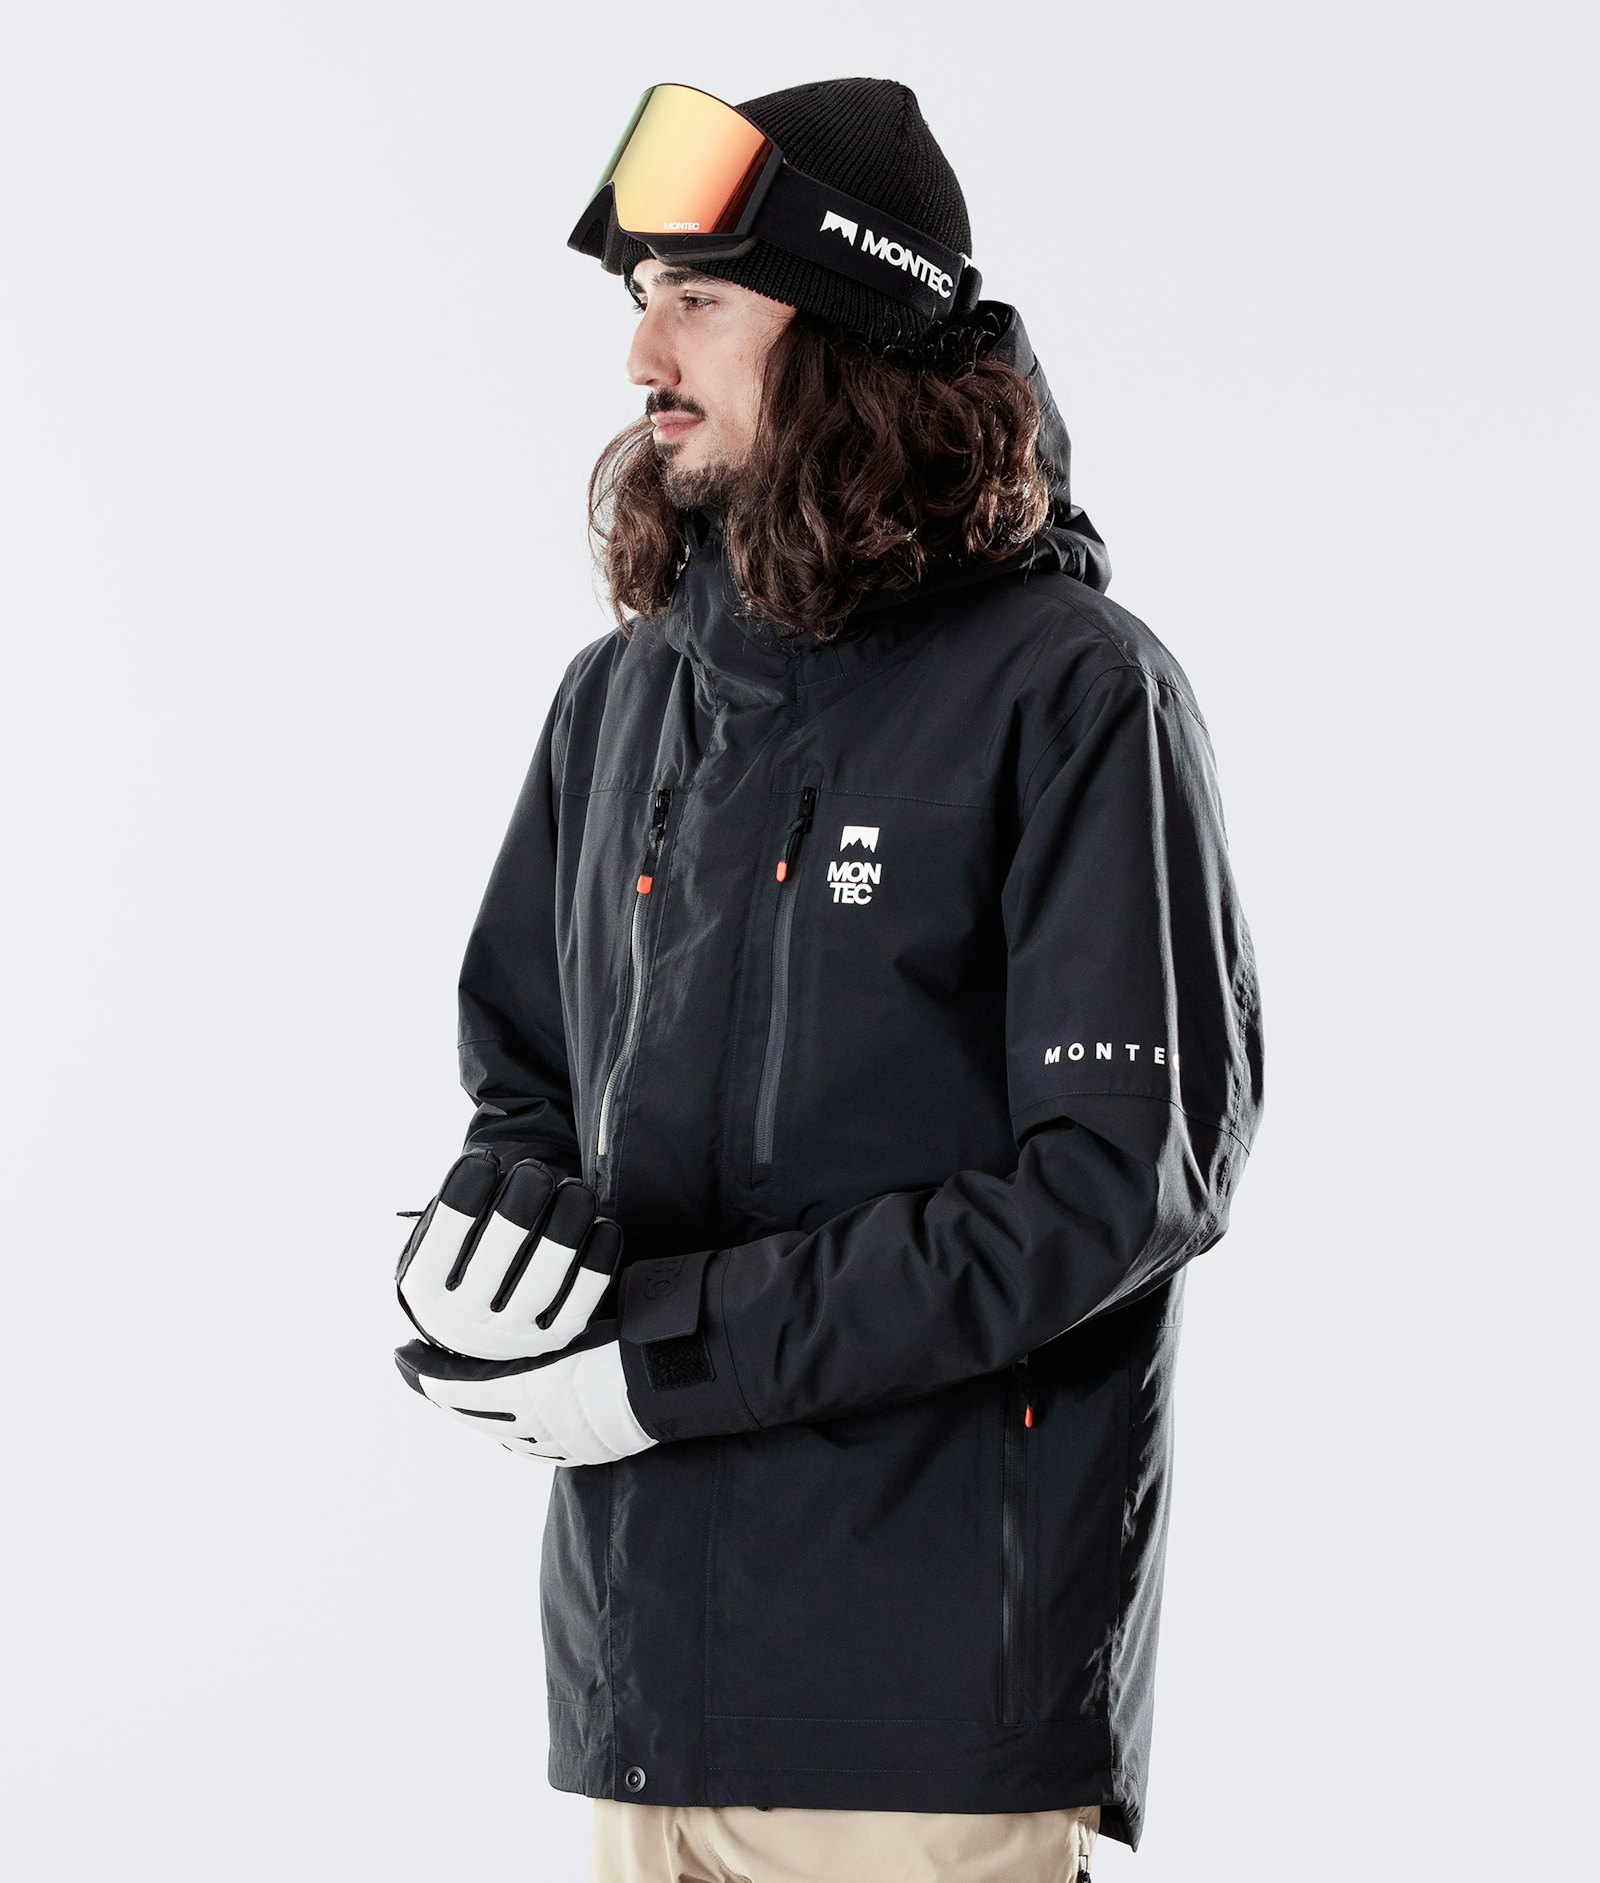 Fawk 2020 Snowboard Jacket Men Black Renewed